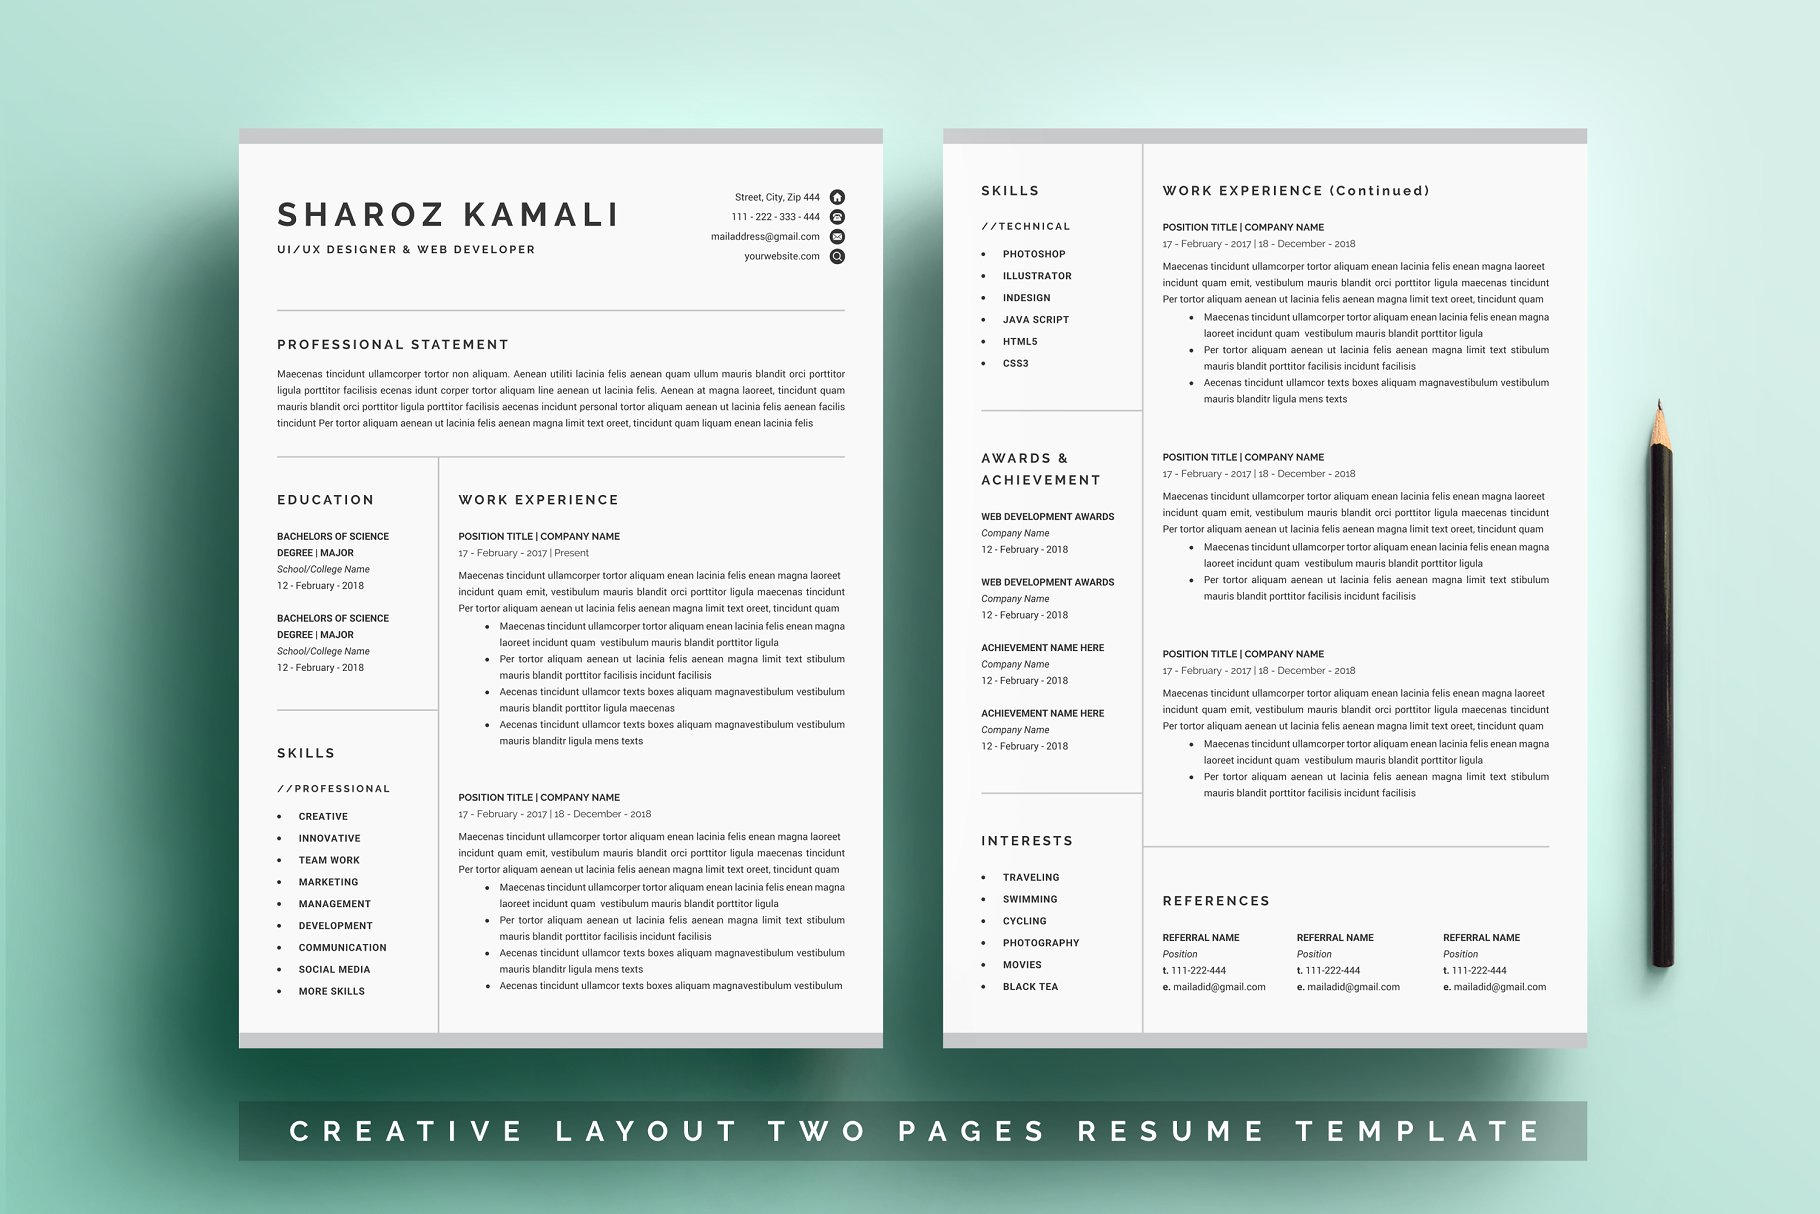 一份4页清爽明了的简历模板 Resume/CV Template 4 Pages Pack插图(1)